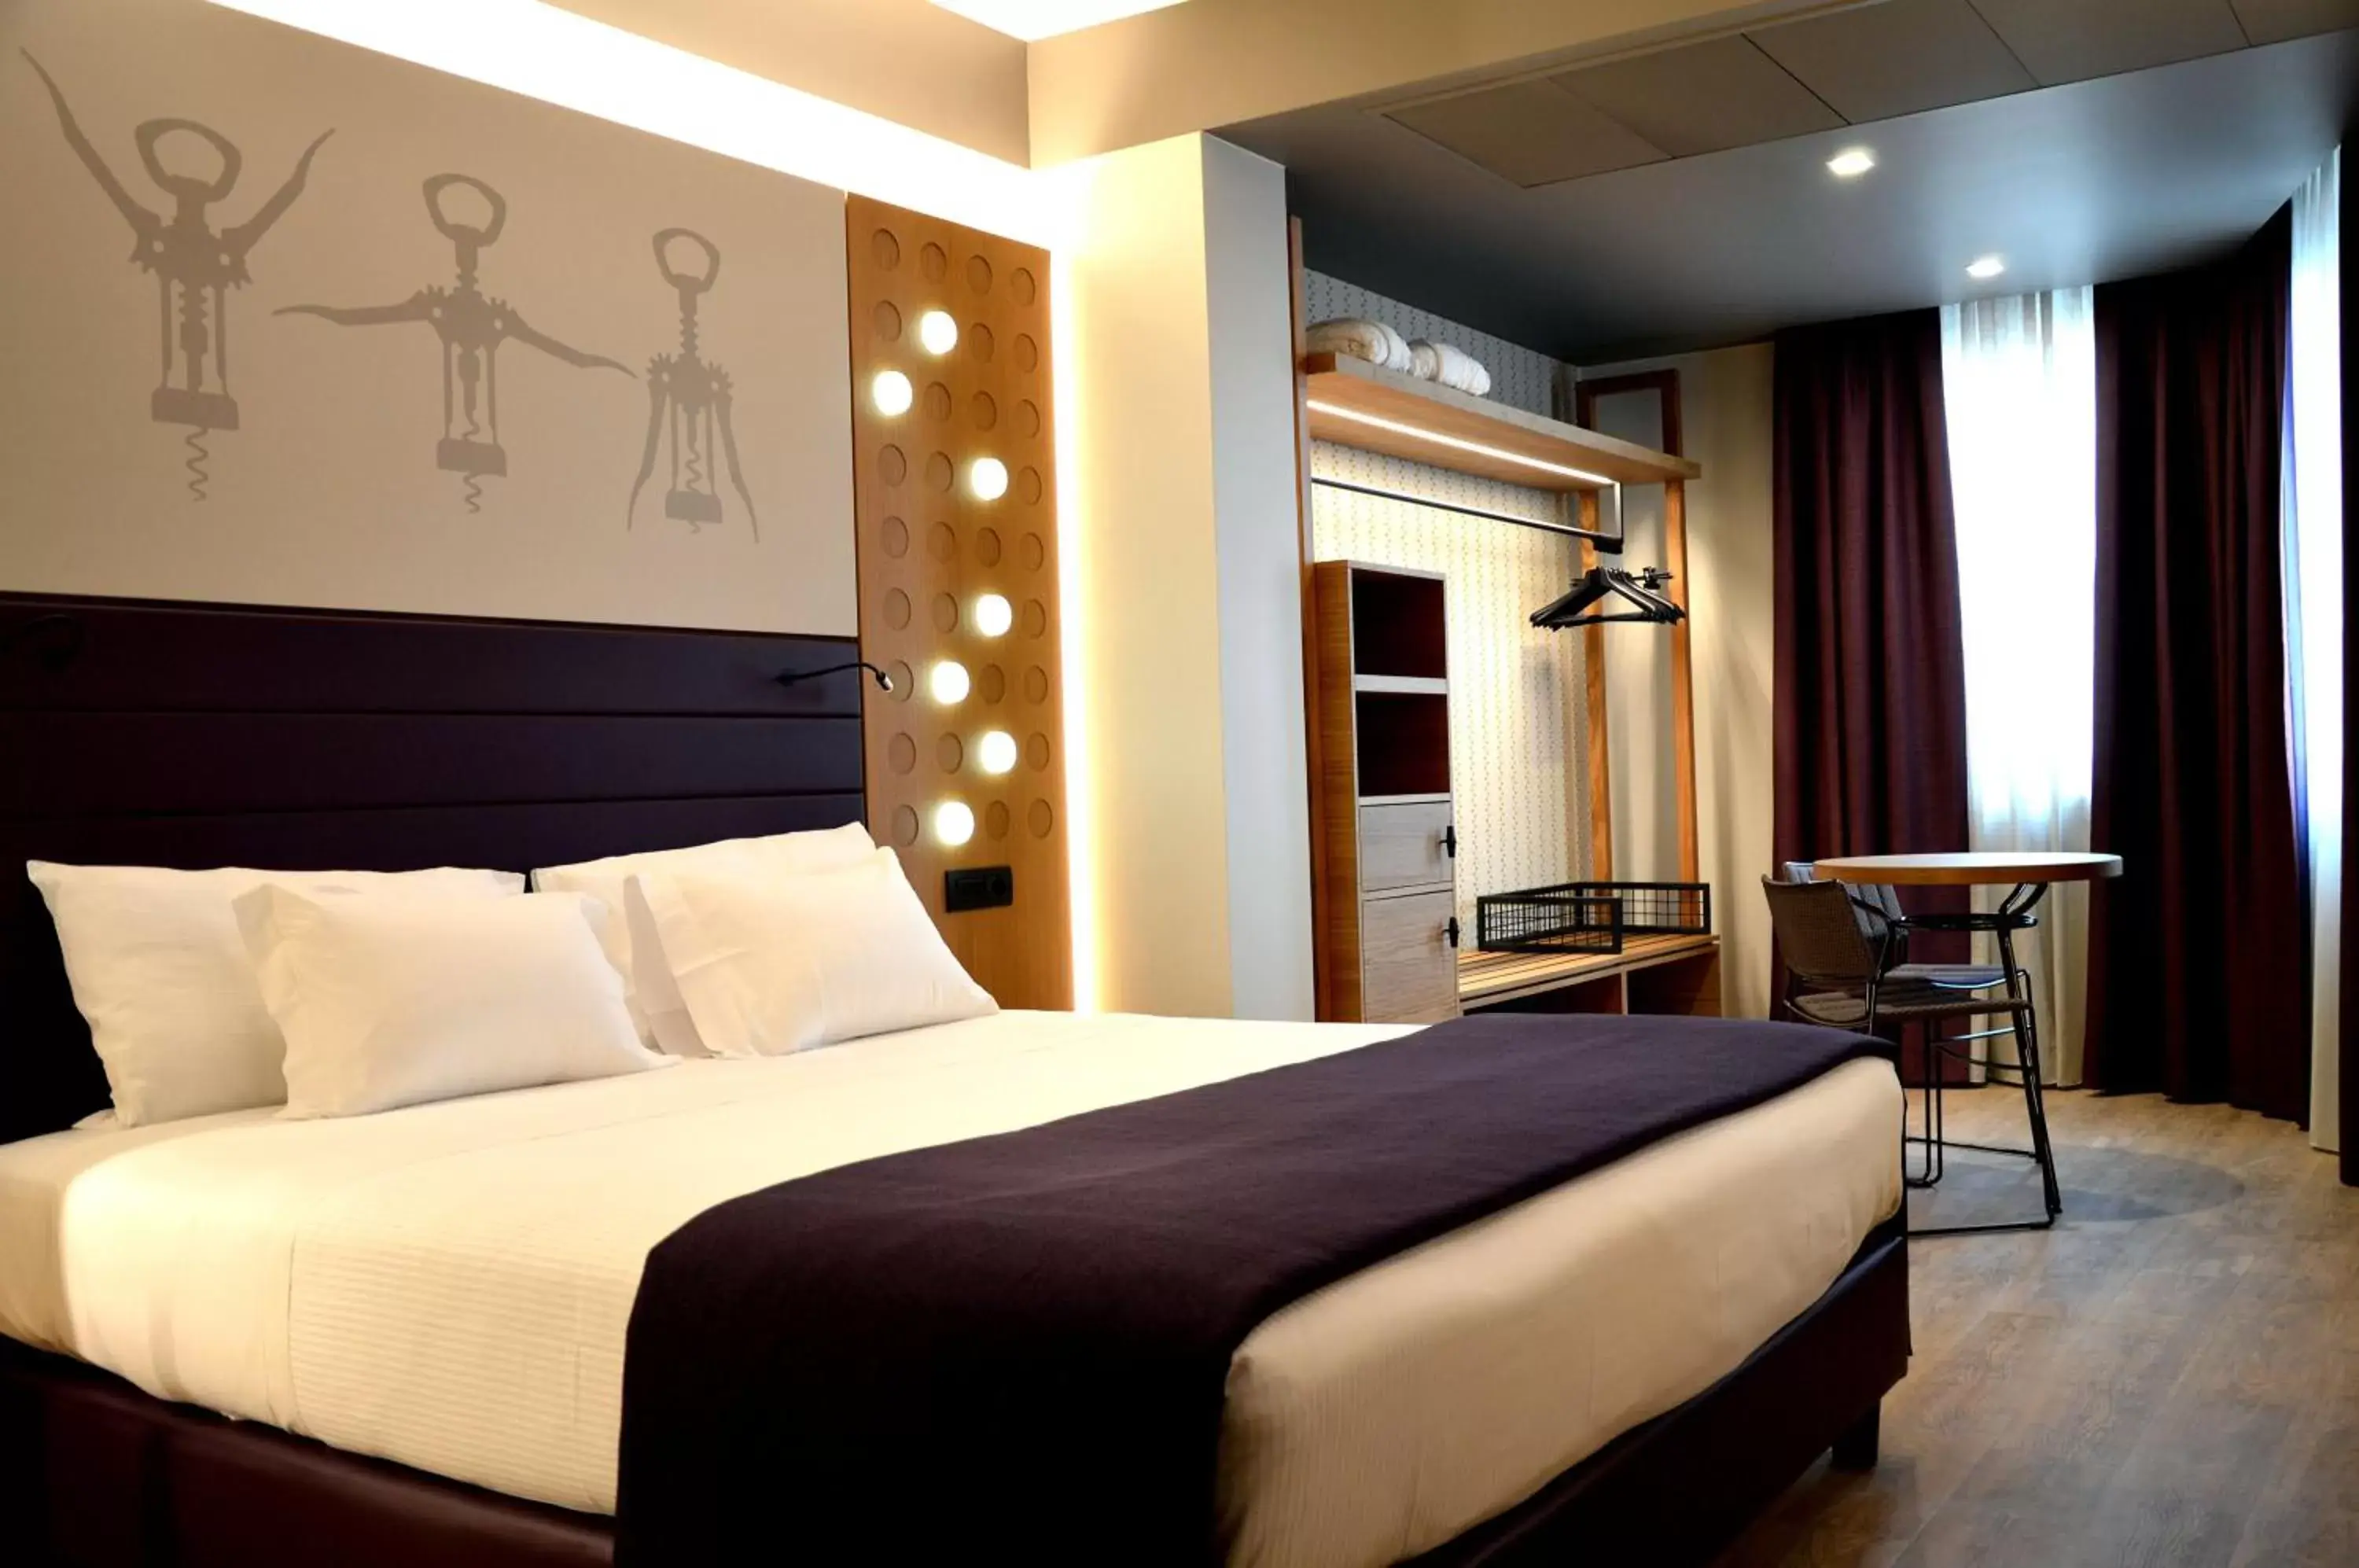 Bedroom, Bed in Best Western Plus Soave Hotel